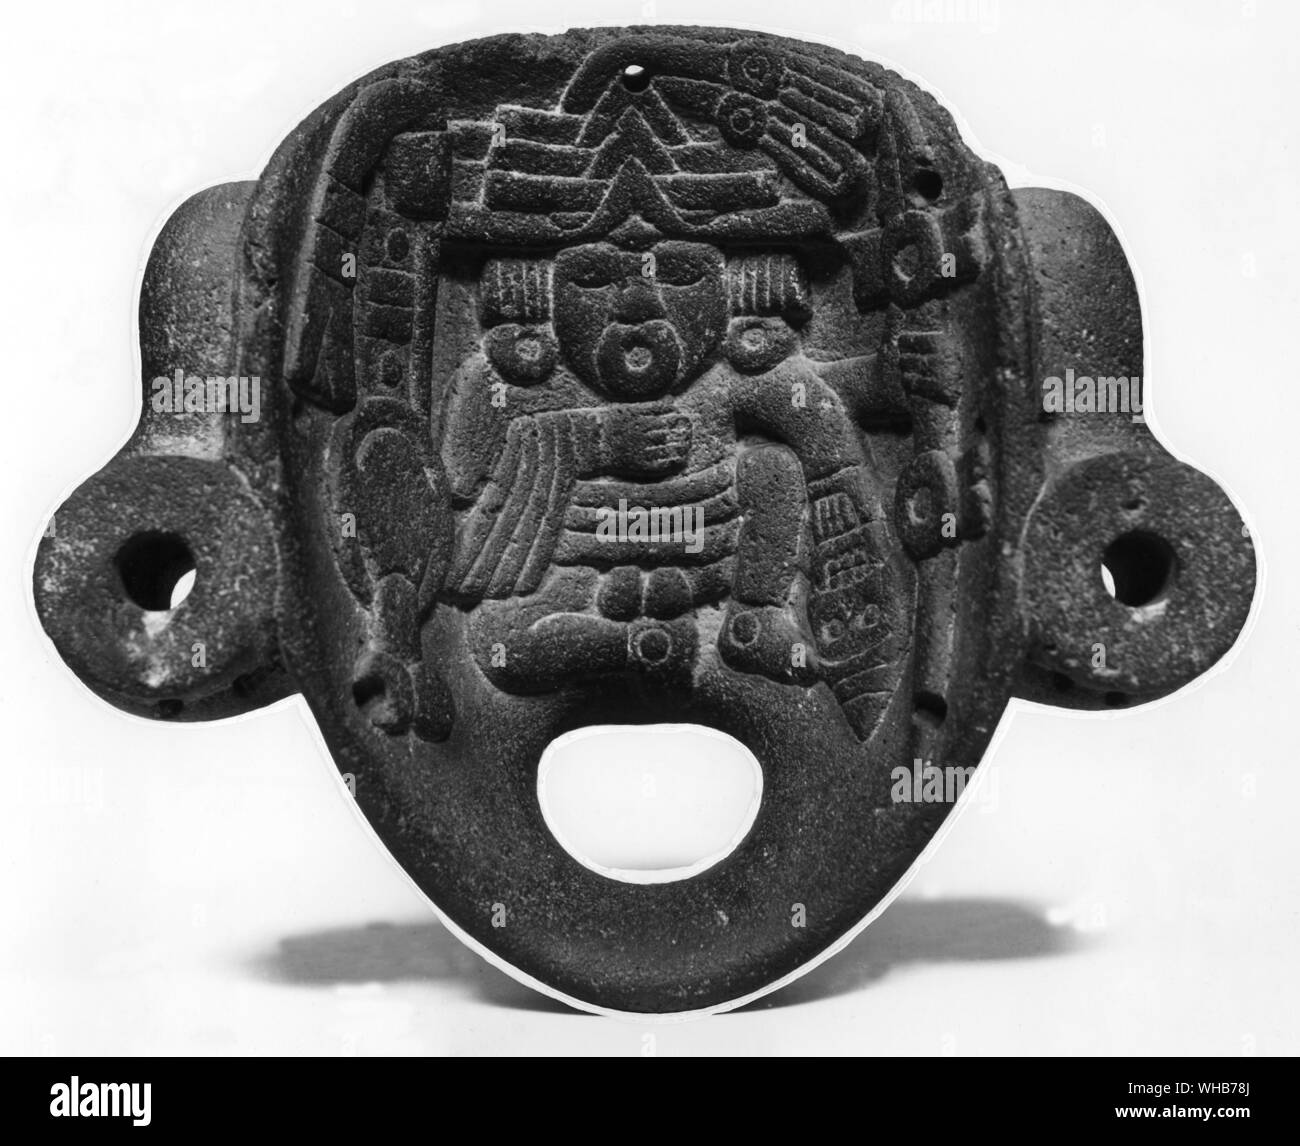 Die geschundenen Gott von Mexiko Xipe Totec war einer von mehreren Mexikanischen Gottheiten, deren menschliche imperonators auch seine Opfer könnte Stein Maske der aztekischen Xipe werden. Stockfoto